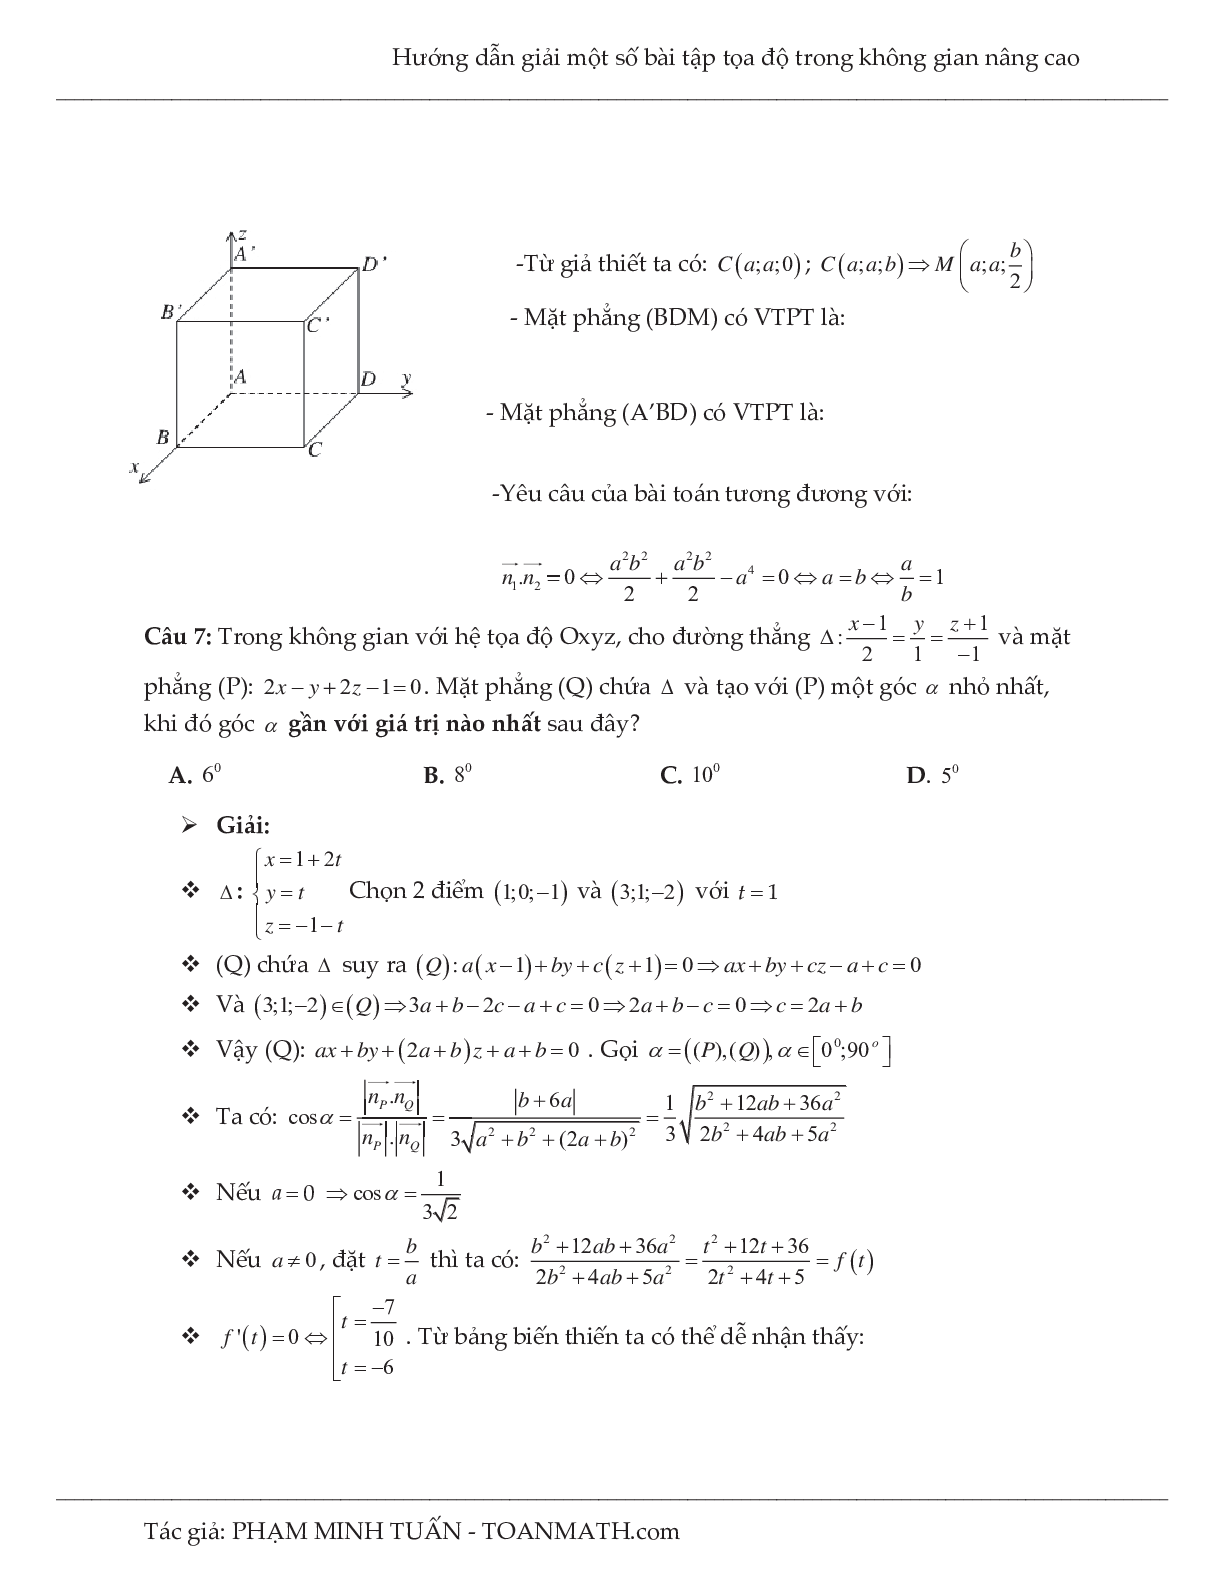 Hướng dẫn giải một số bài tập tọa độ trong không gian nâng cao môn Toán lớp 12 (trang 4)